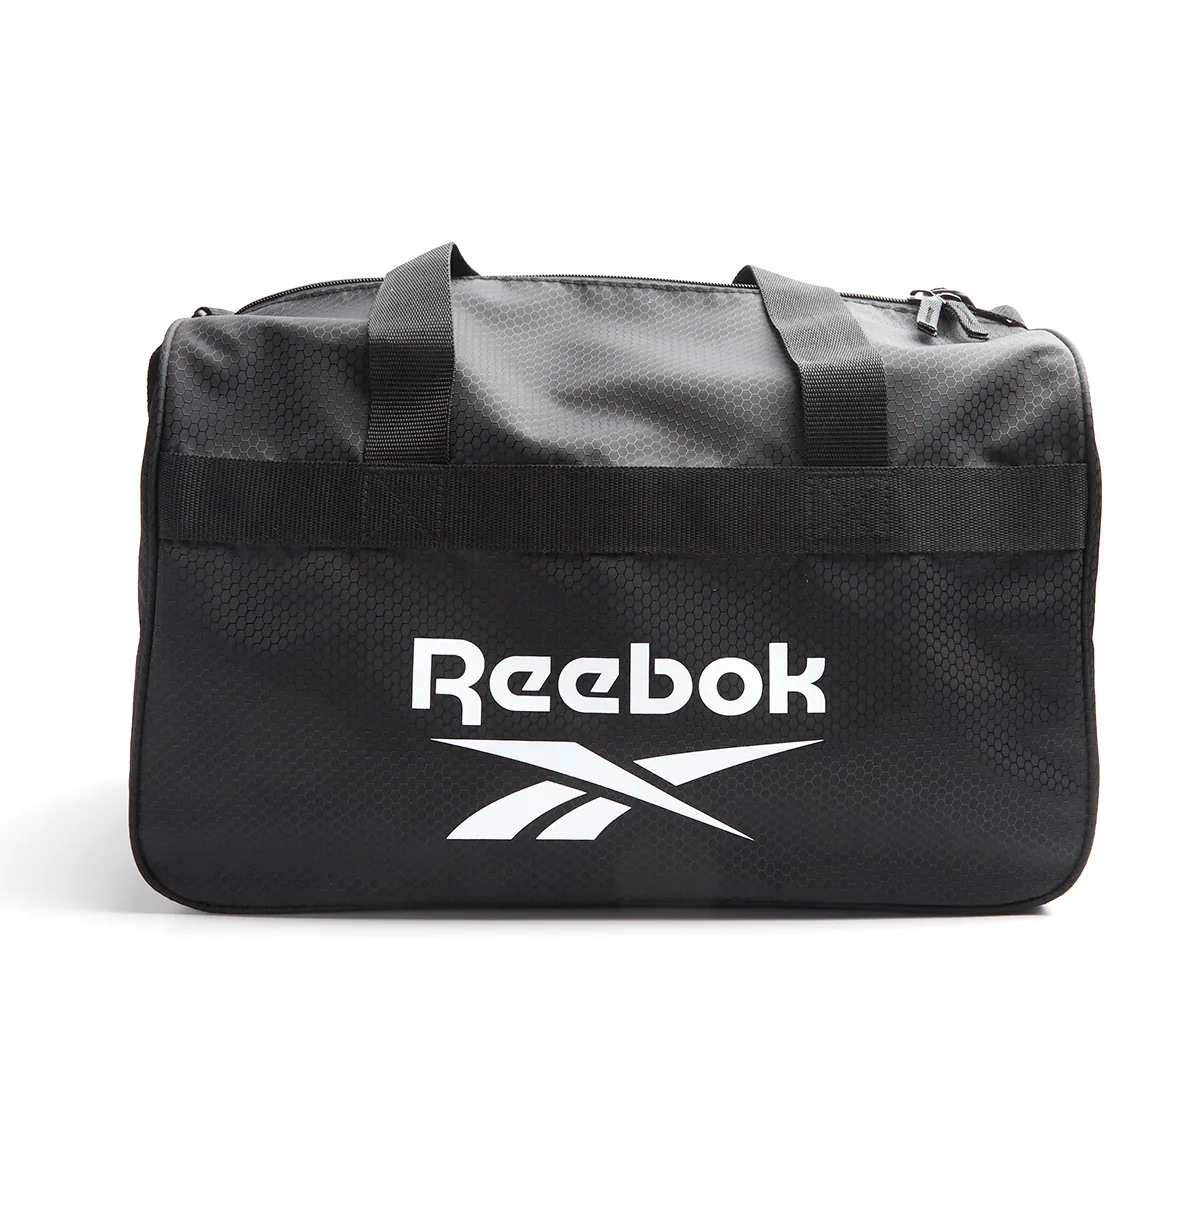 Image of Reebok Warrior II Duffle Bag